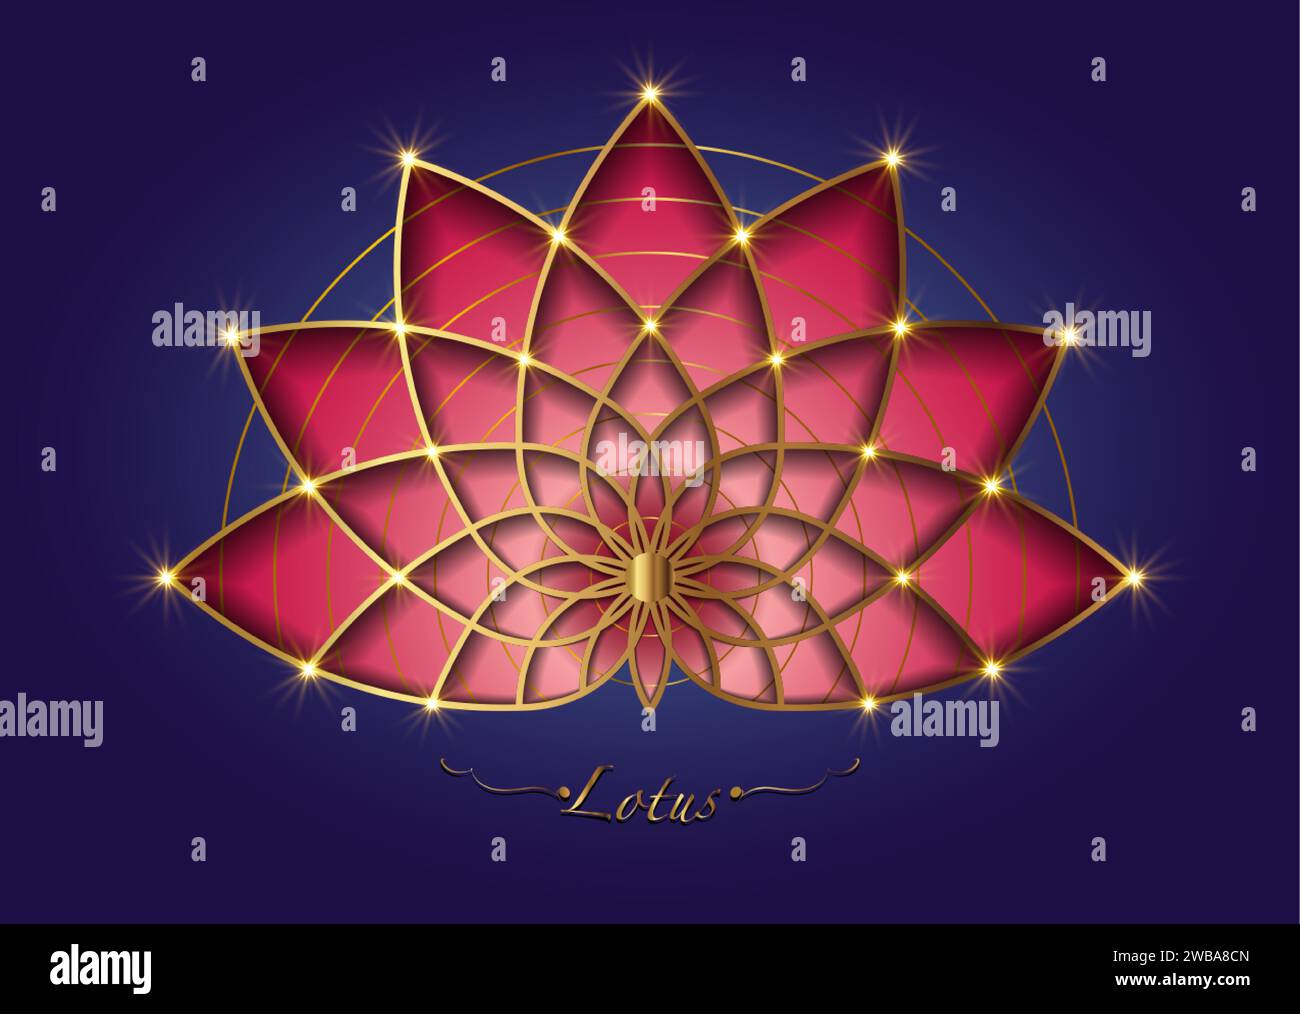 Rote Lotusblüte, Mandala mit heiliger Geometrie, stilisiertes kreisförmiges Ornament, goldenes Blumenlogo. Blumenblüten Symbole von Yoga, Spa, Schönheitssalon, Stock Vektor